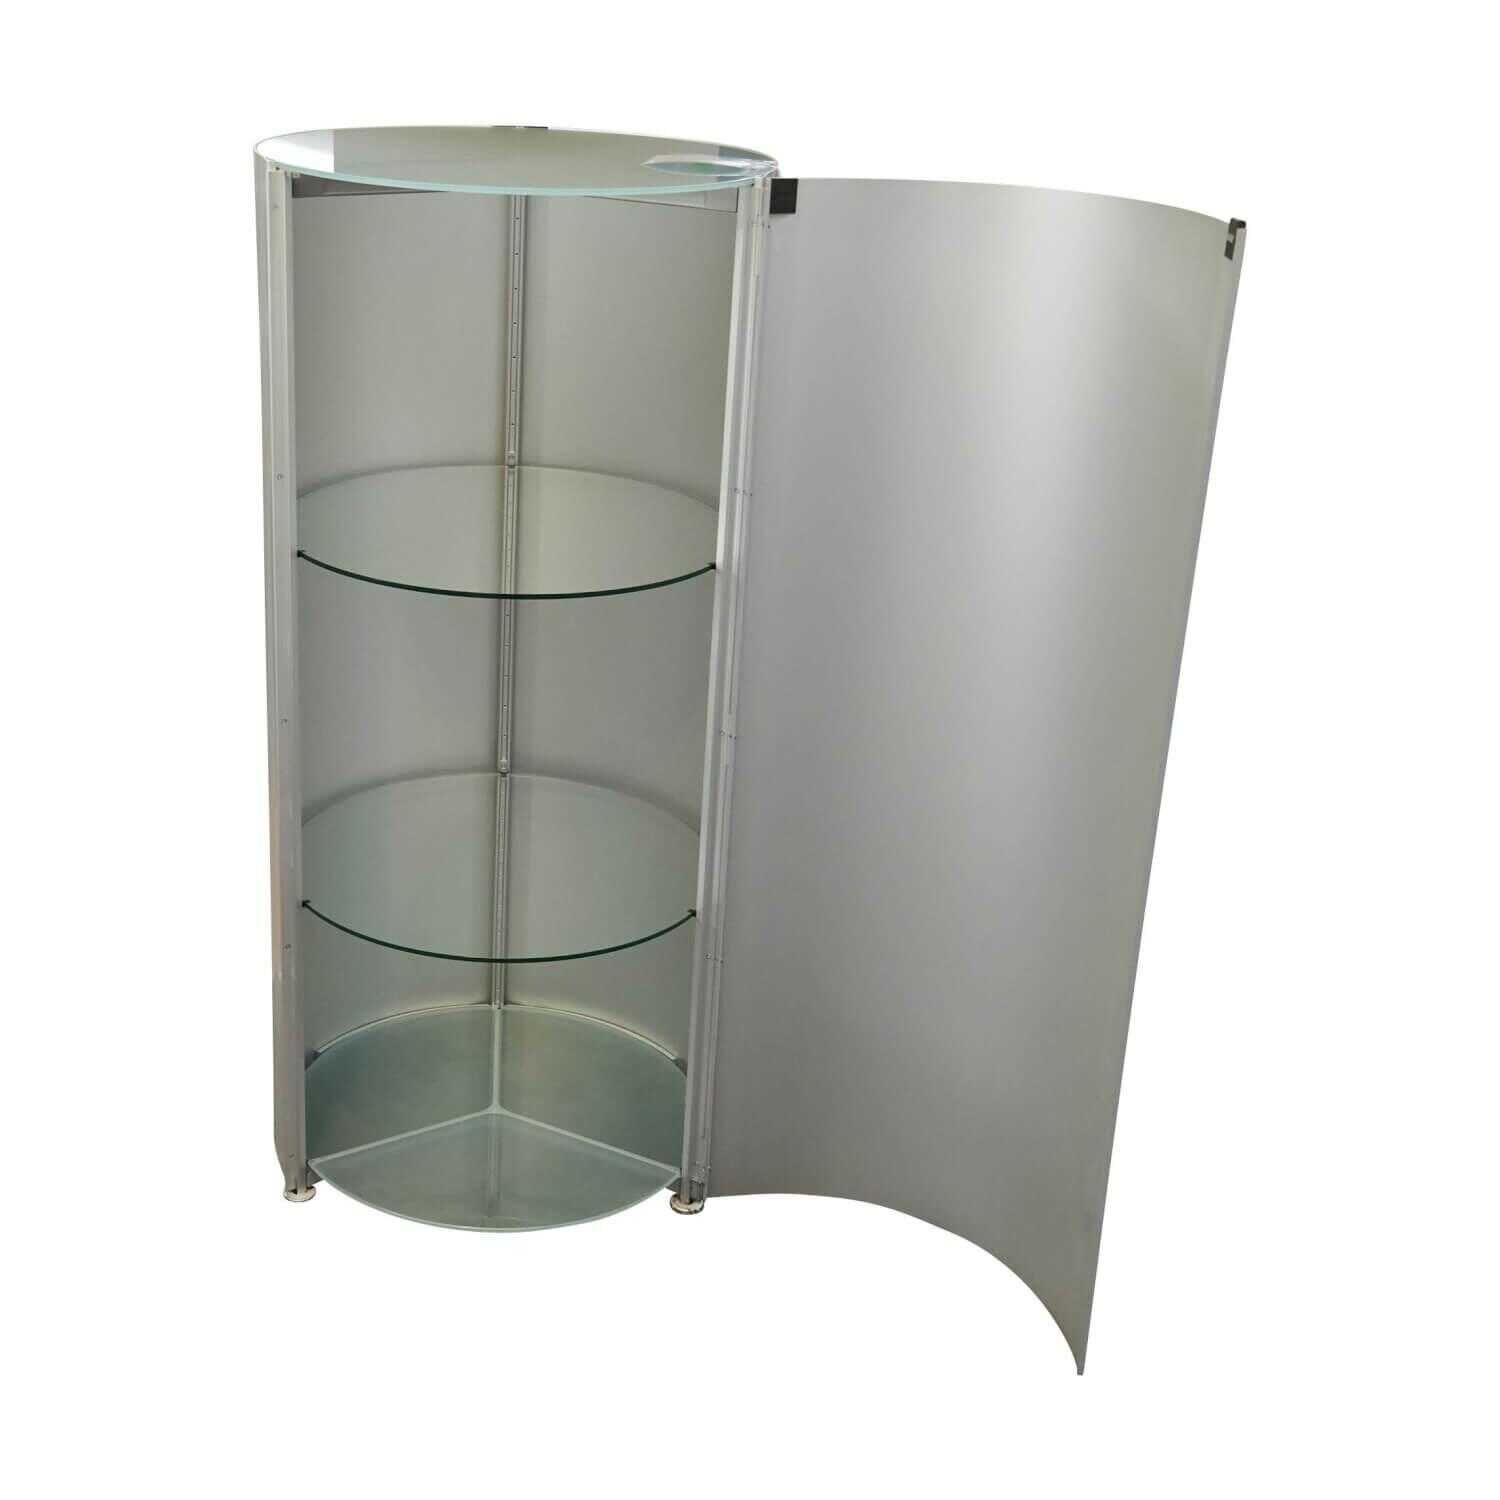 Container Technoid Korpus Aluminium Innenaufteilung Glas